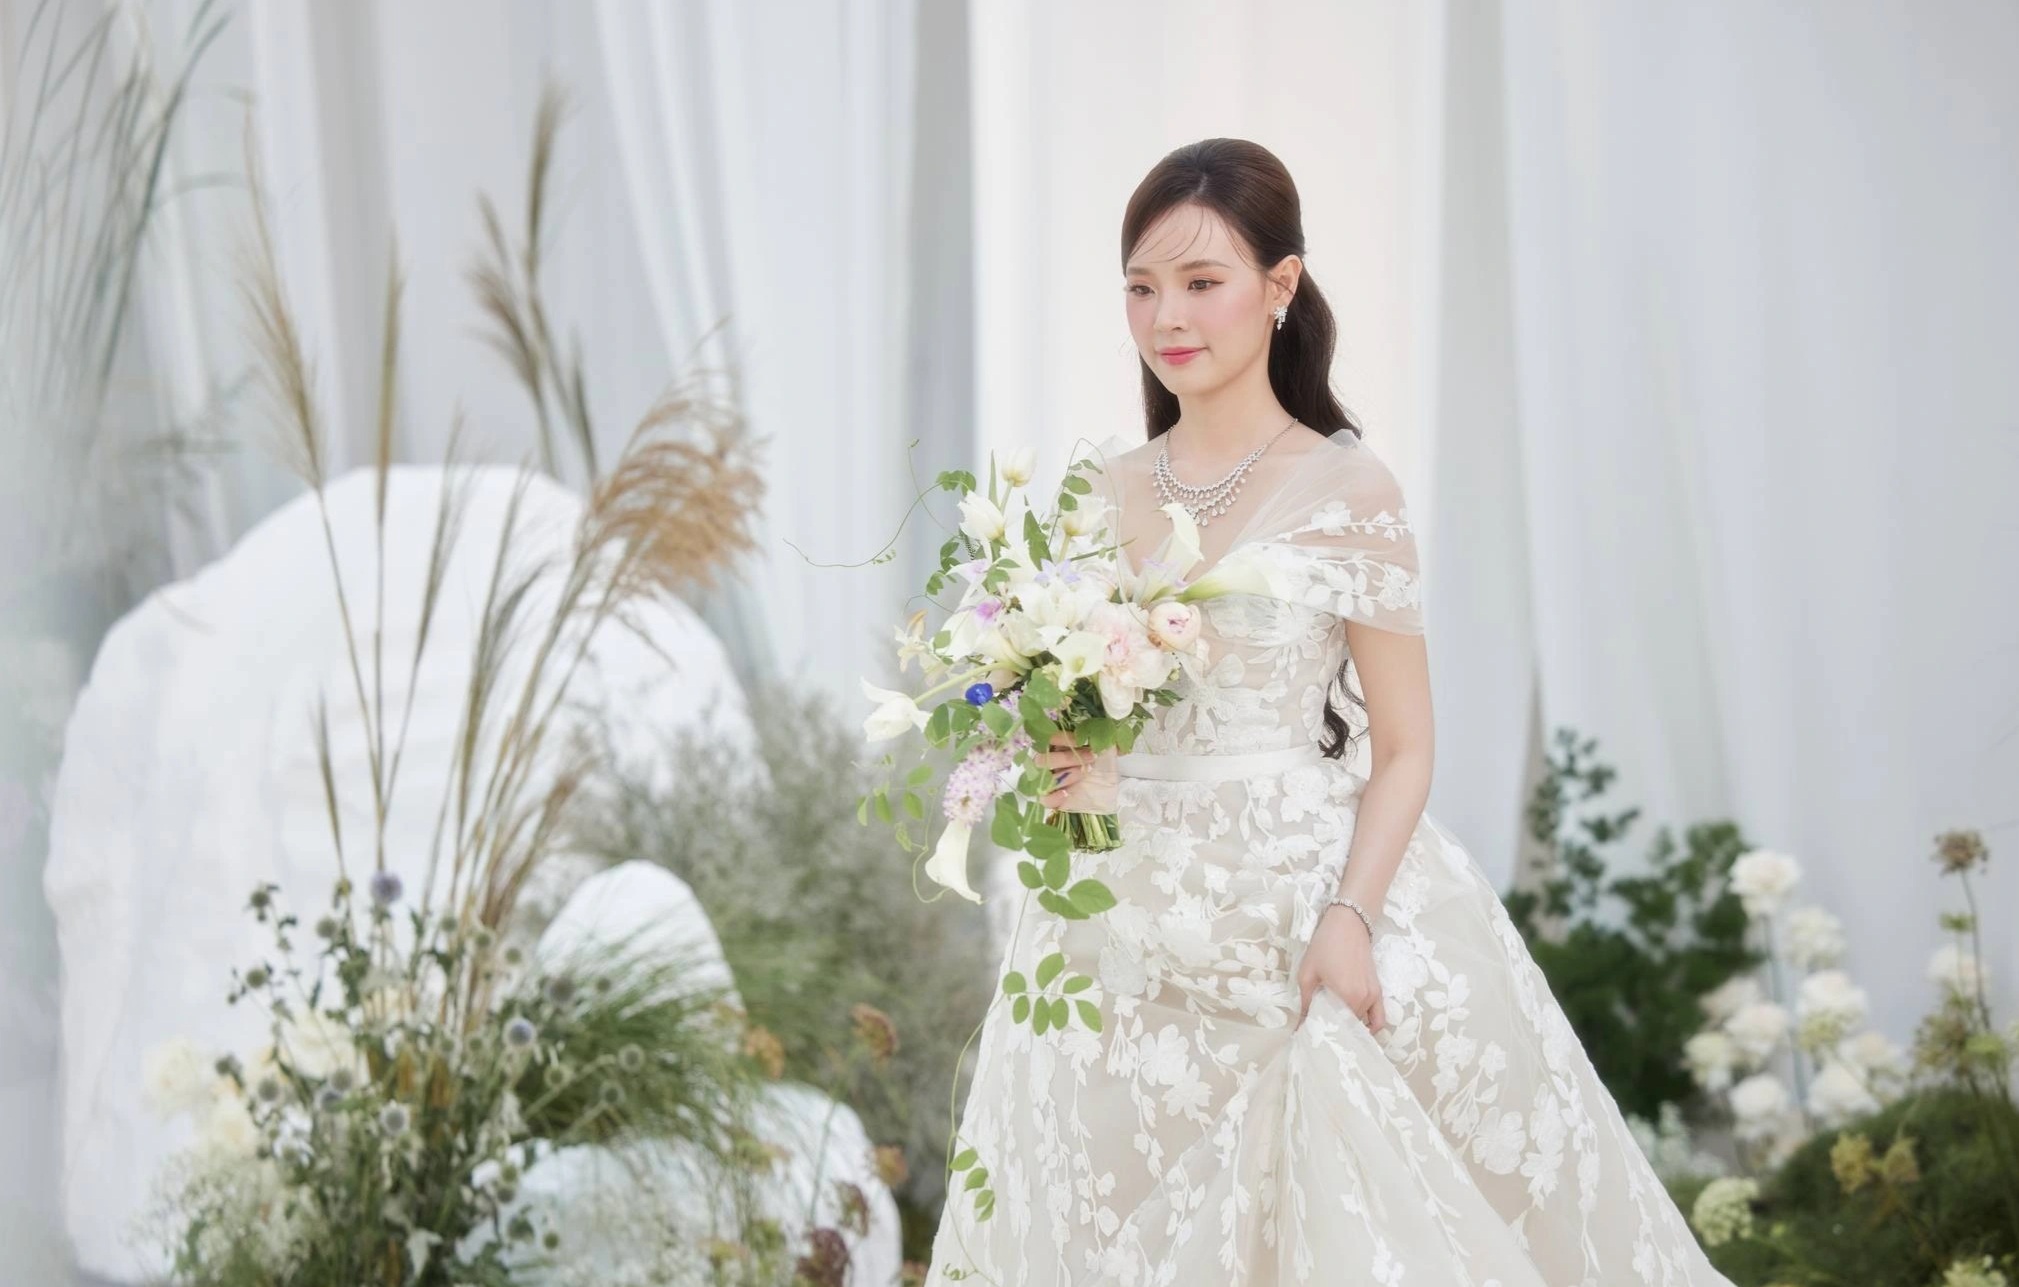 View - Midu diện 4 chiếc váy độc đáo, trị giá hàng tỷ đồng trong đám cưới | Báo Dân trí